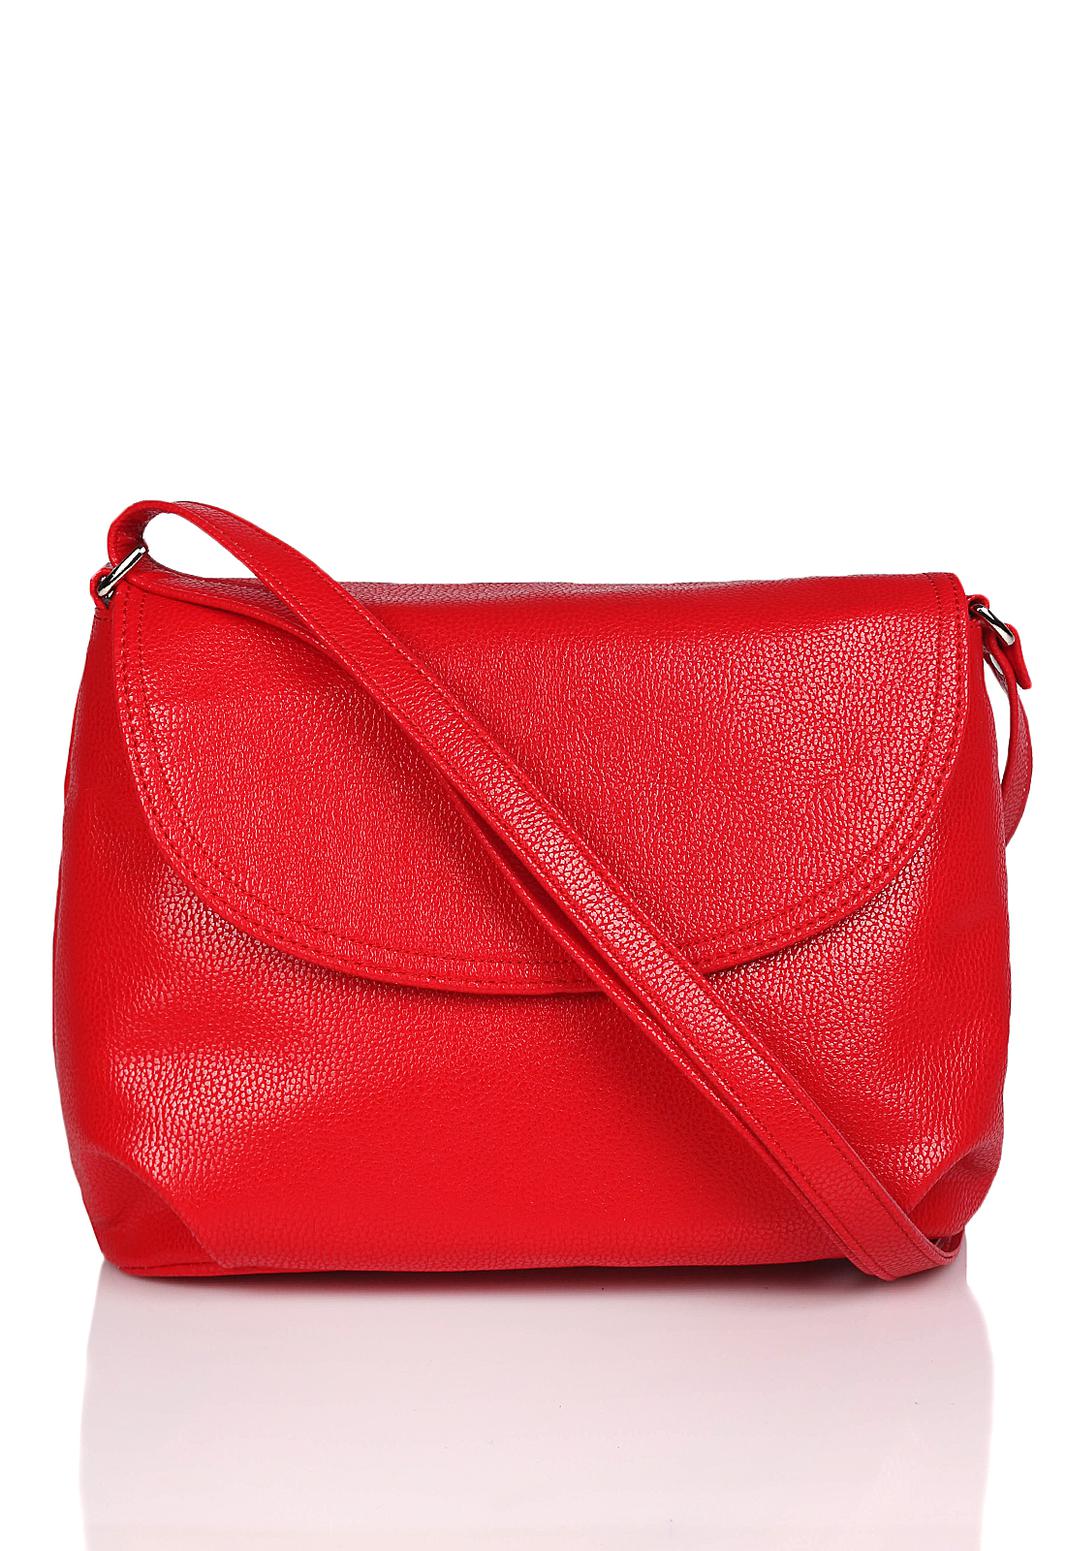 Купить сумку беларусь. Красная сумка галантея. Галантея 15015. Женские сумочки на валберис. Галантэя красные сумки.